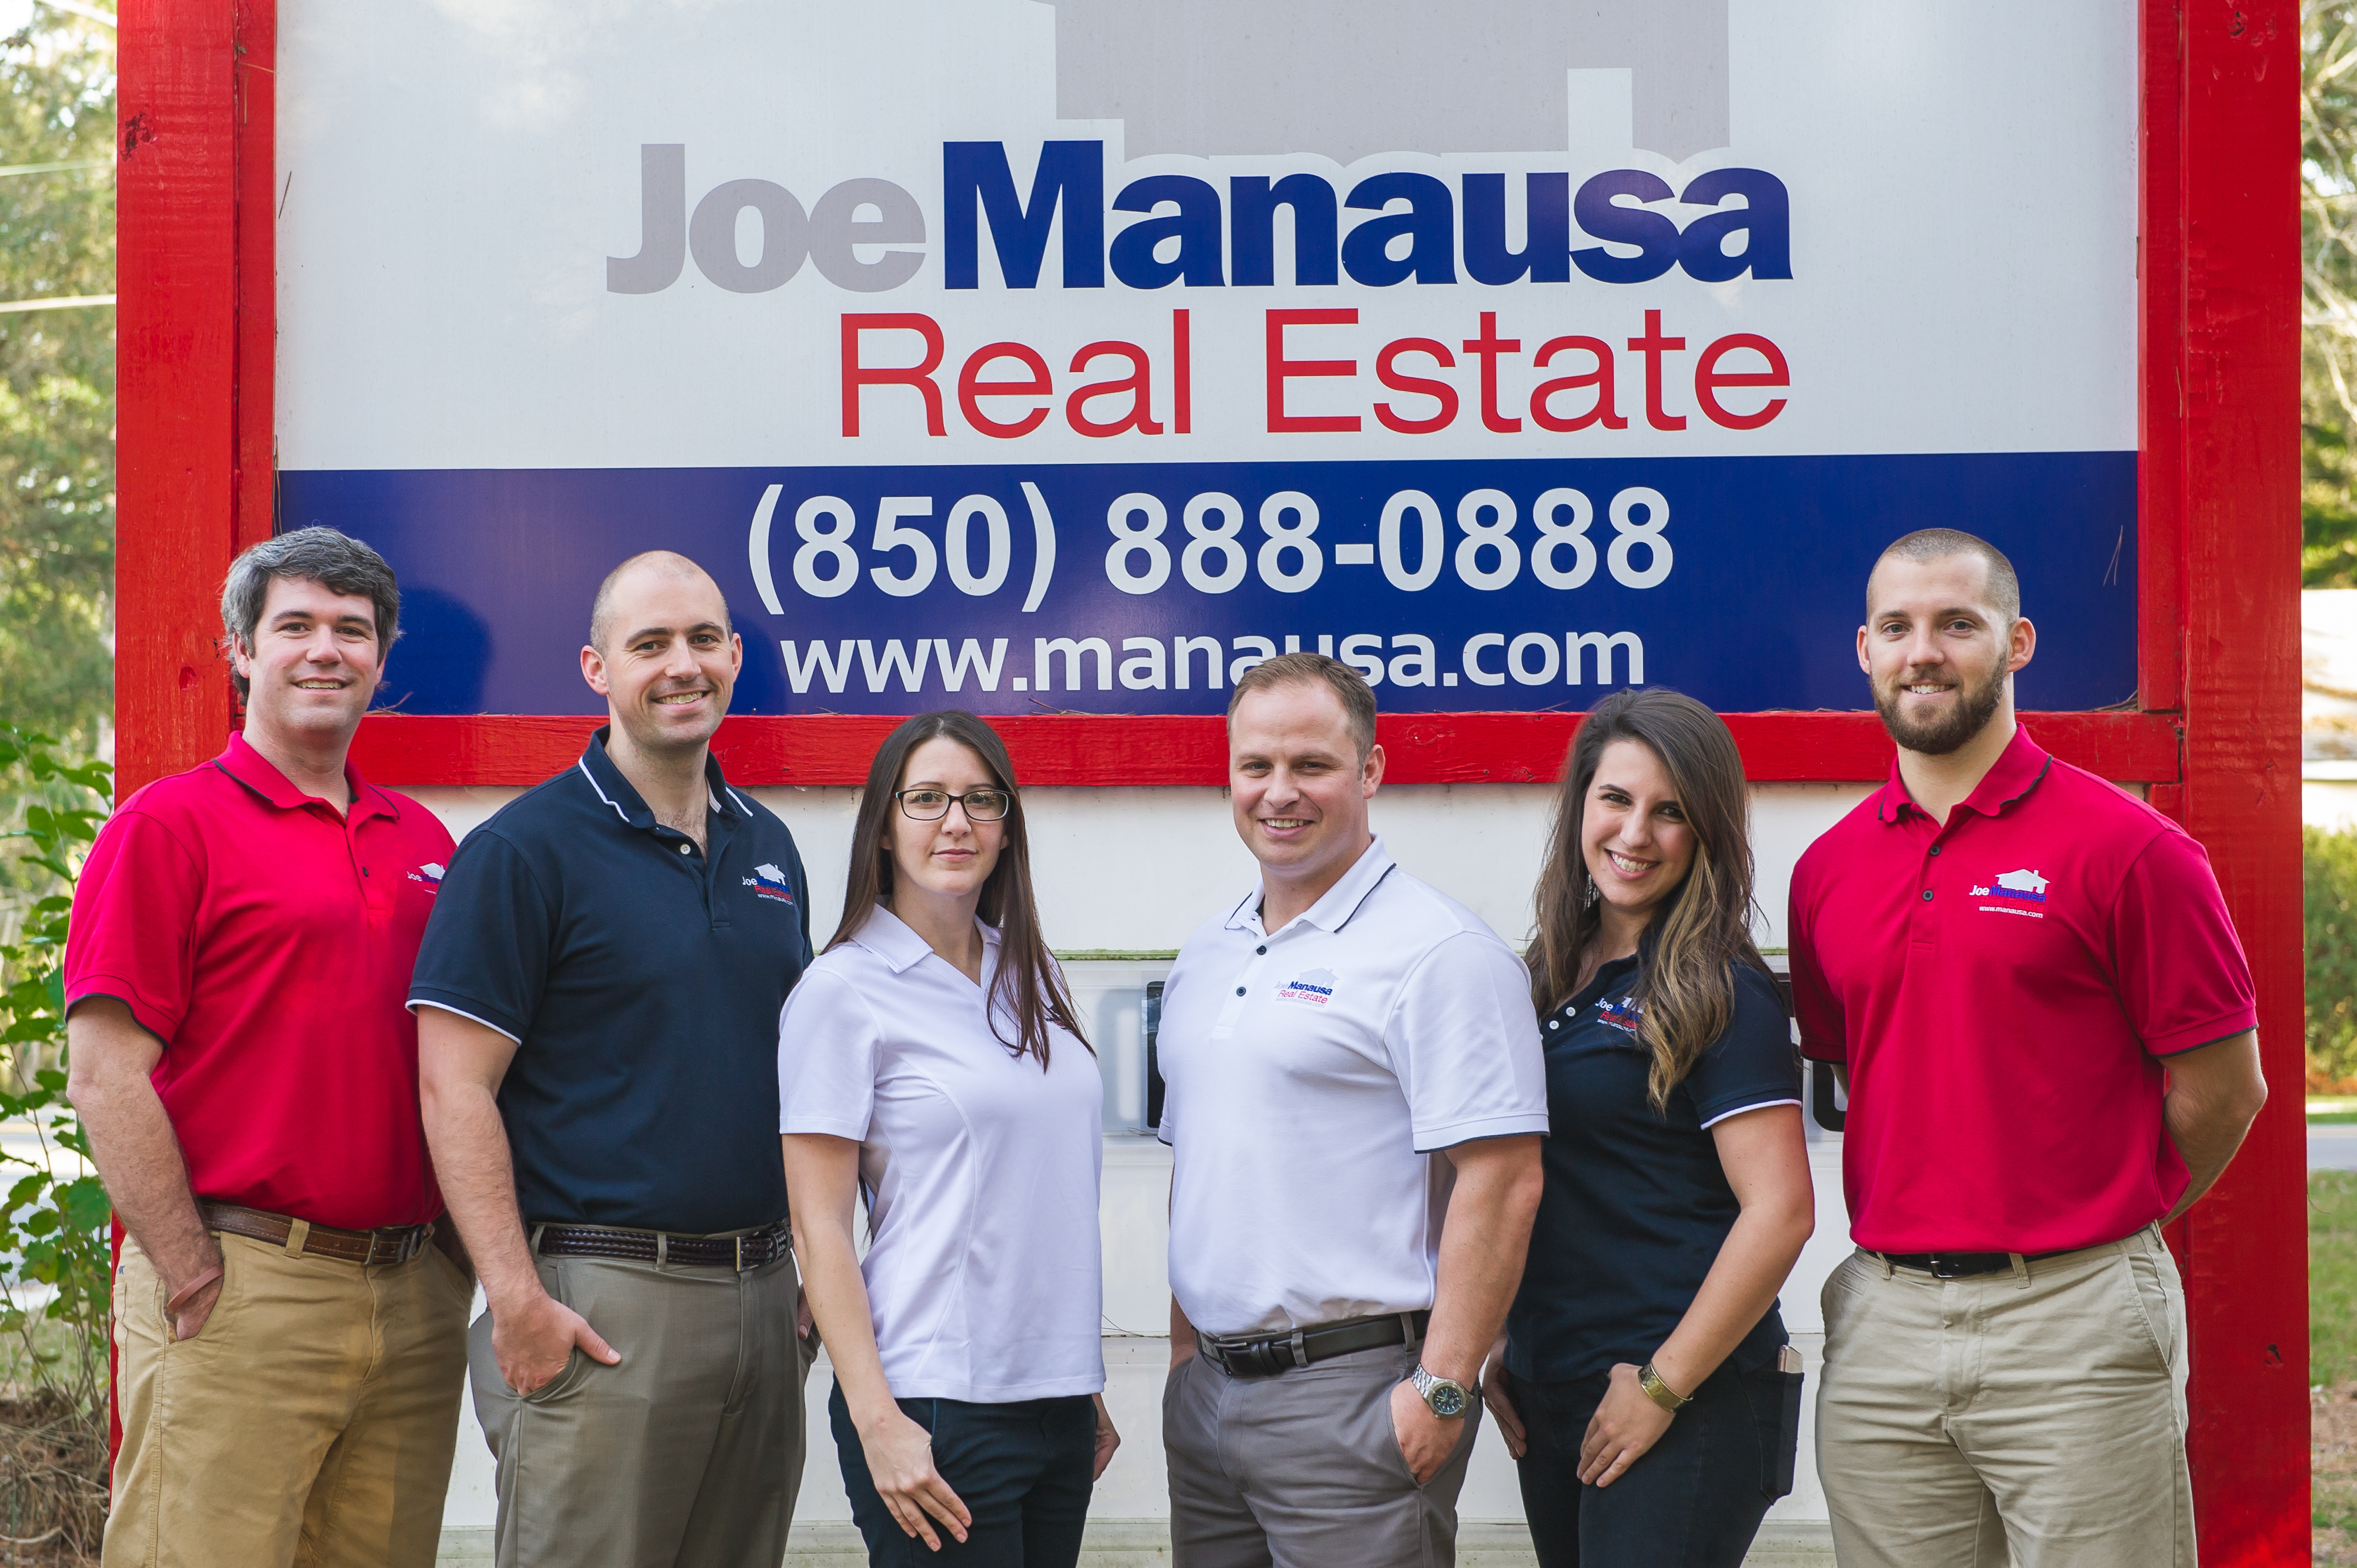 Joe Manausa Real Estate Agents in Tallahassee Florida